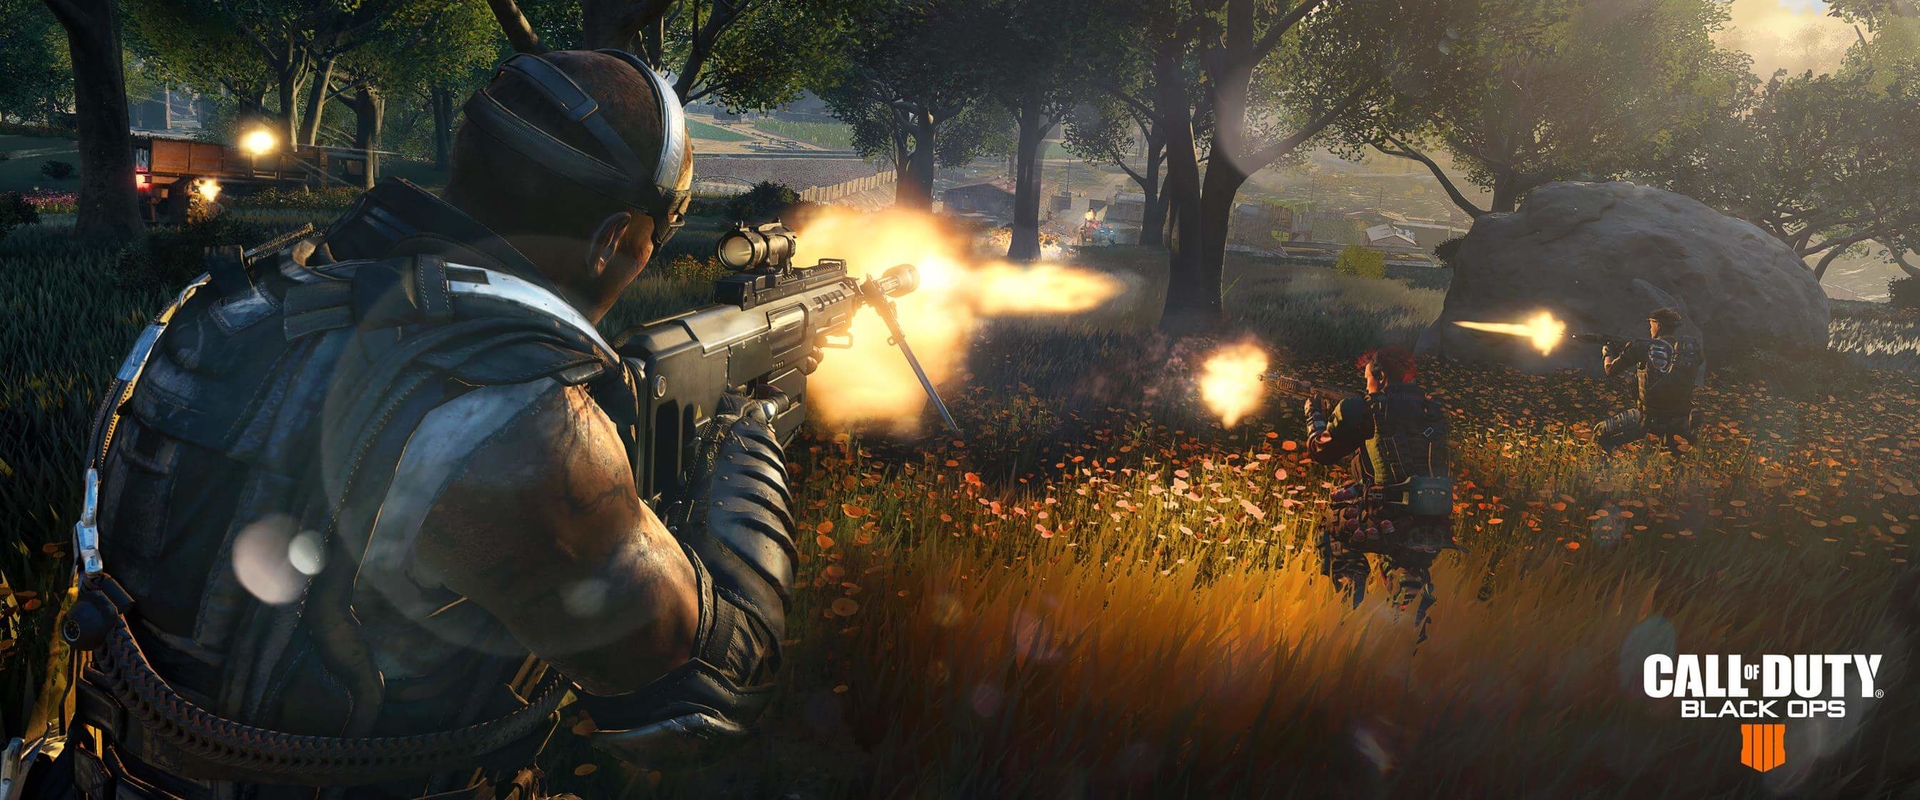 Mégis 100 játékos küzdhet meg egymással a Call of Duty battle royale módjában